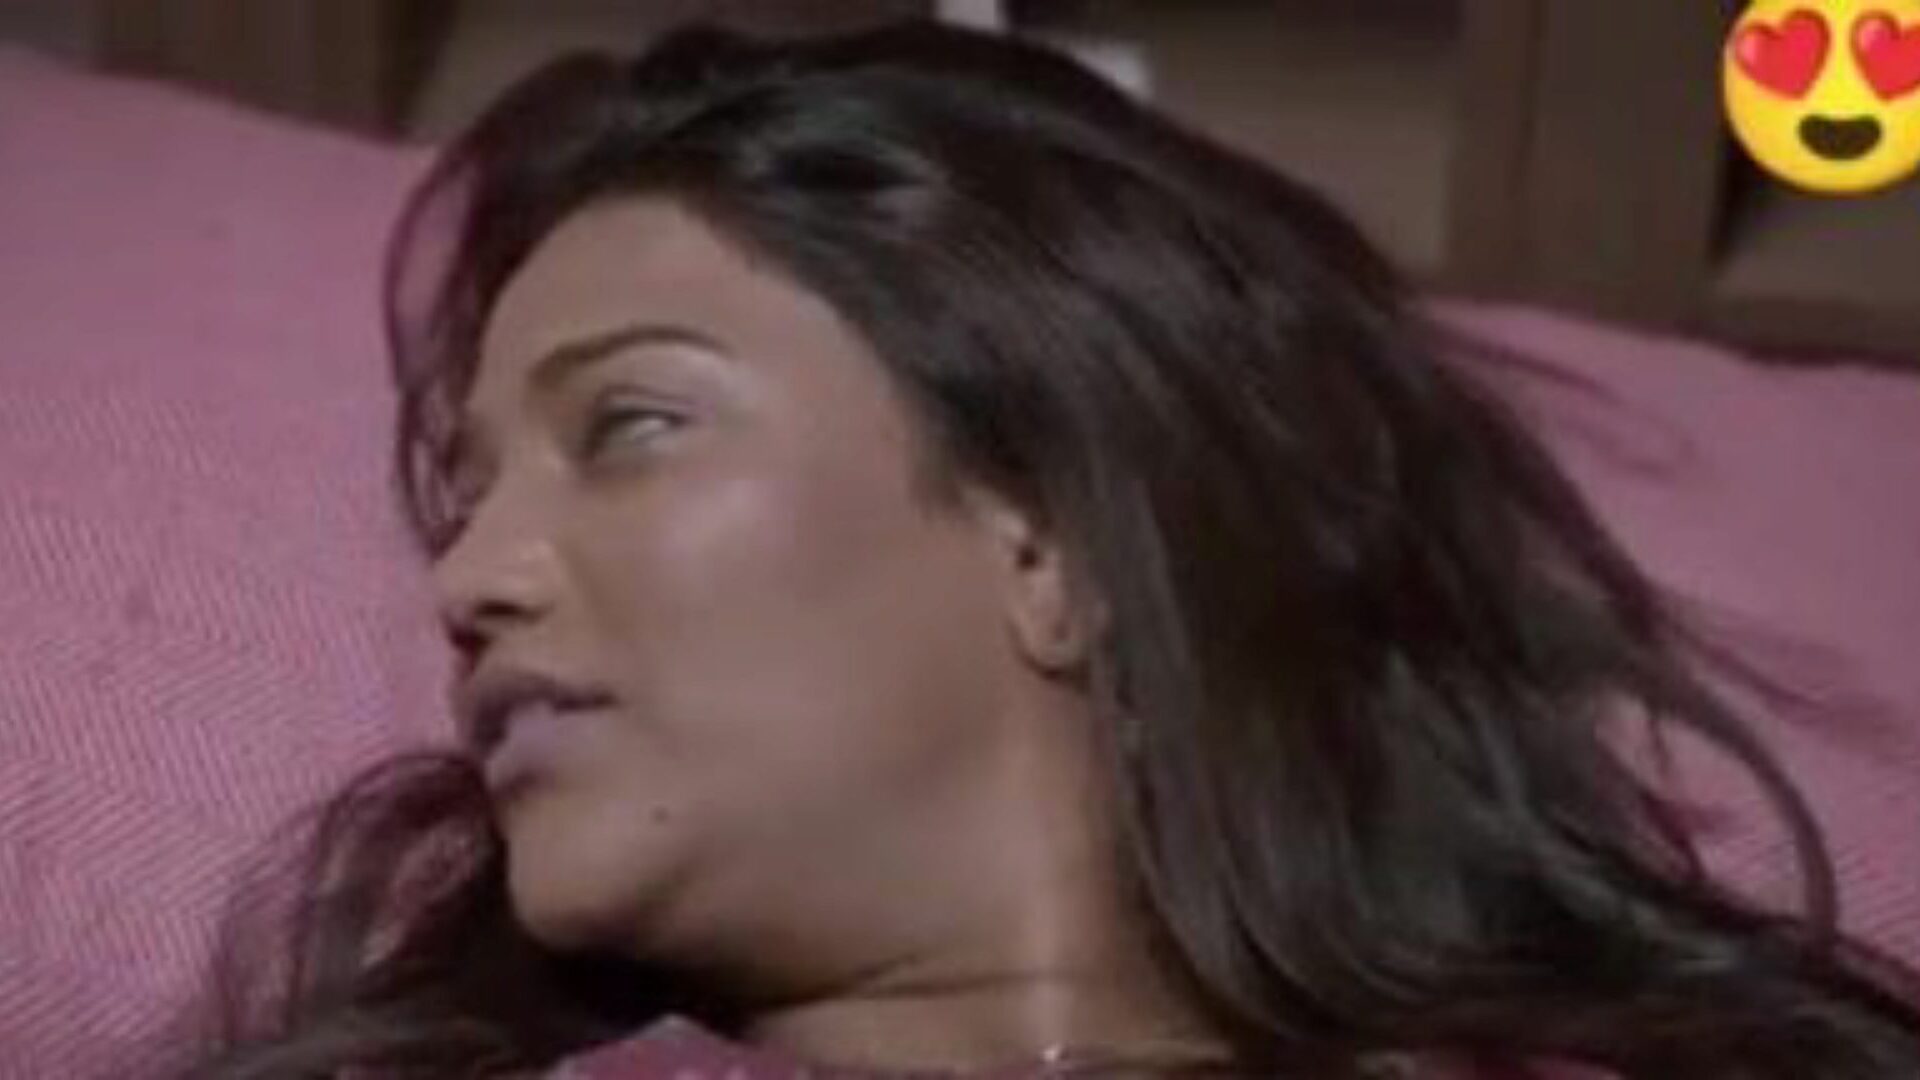 doppelter dhamaka saree sex, kostenloser indischer porno da: xhamster schau dir den doppelten dhamaka saree sex film auf xhamster an, der massiven webressource für verkehrsröhren mit tonnenweise kostenlosem indischem neuen sex xxx & hindi pornografie filmen szenen